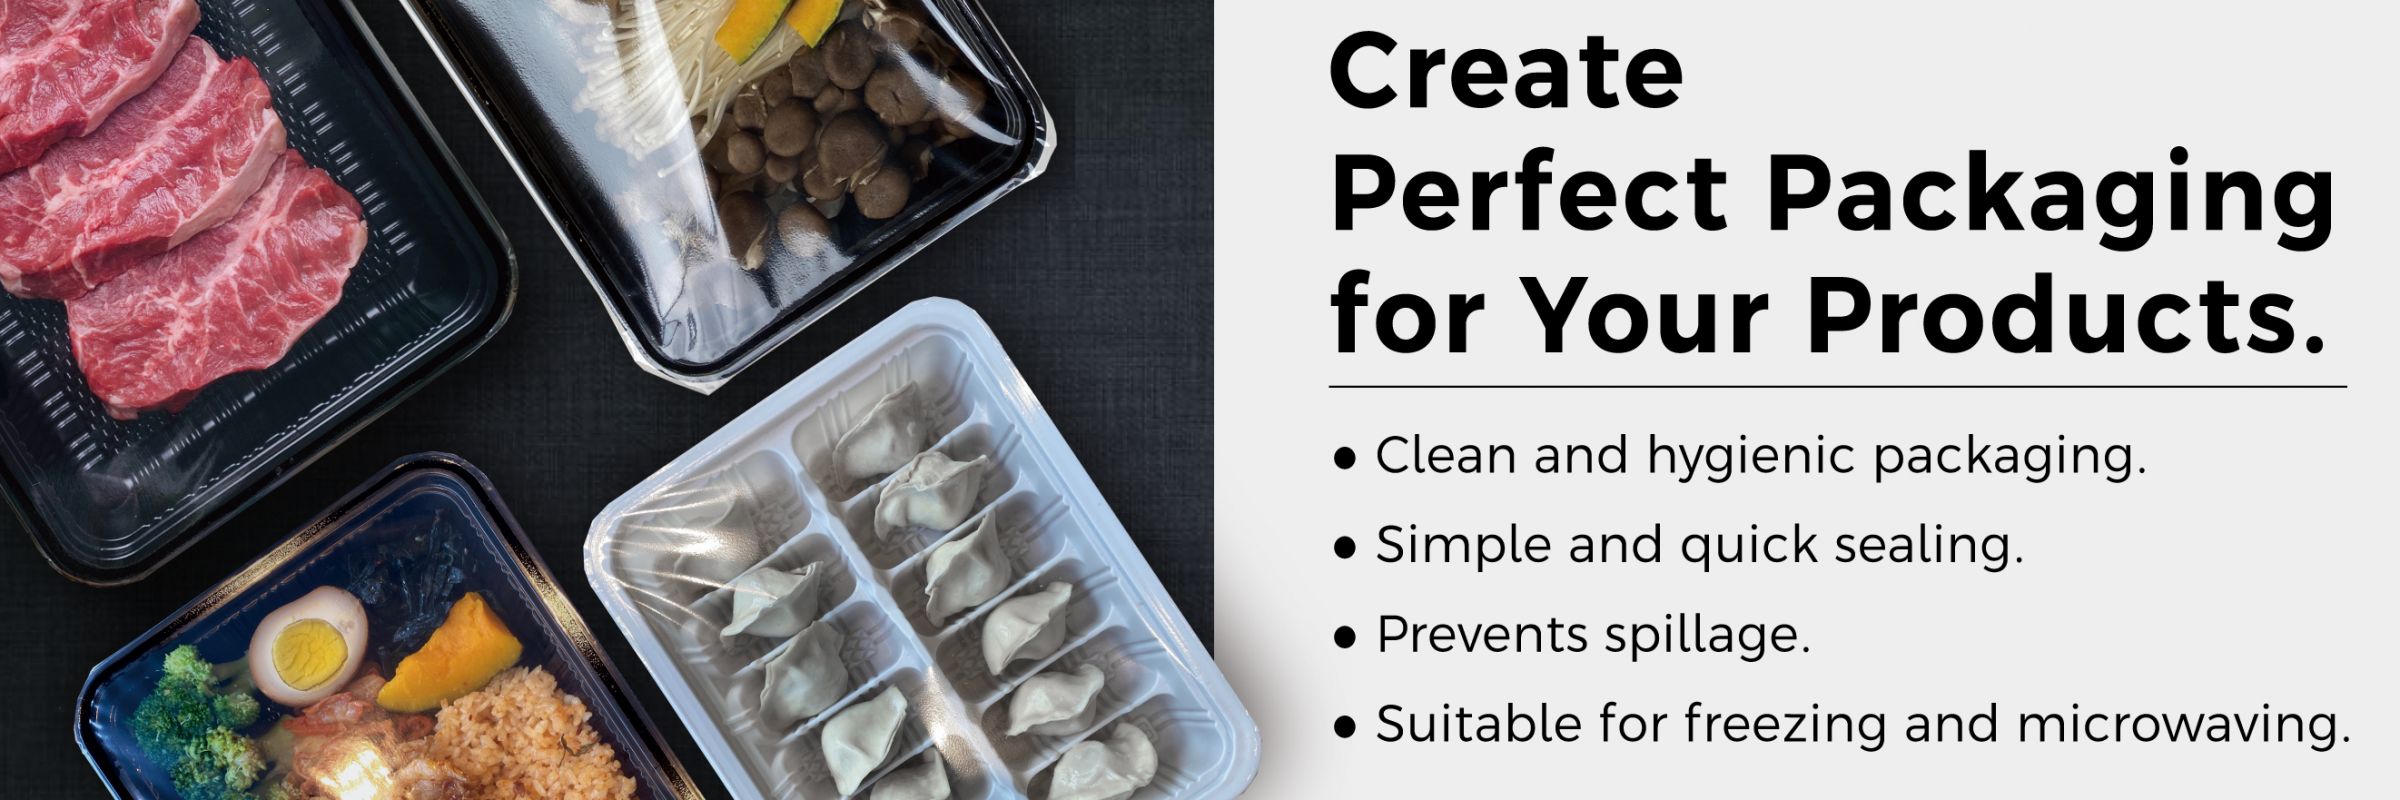 Erstellen Sie perfekte Verpackungen für Ihre Produkte.